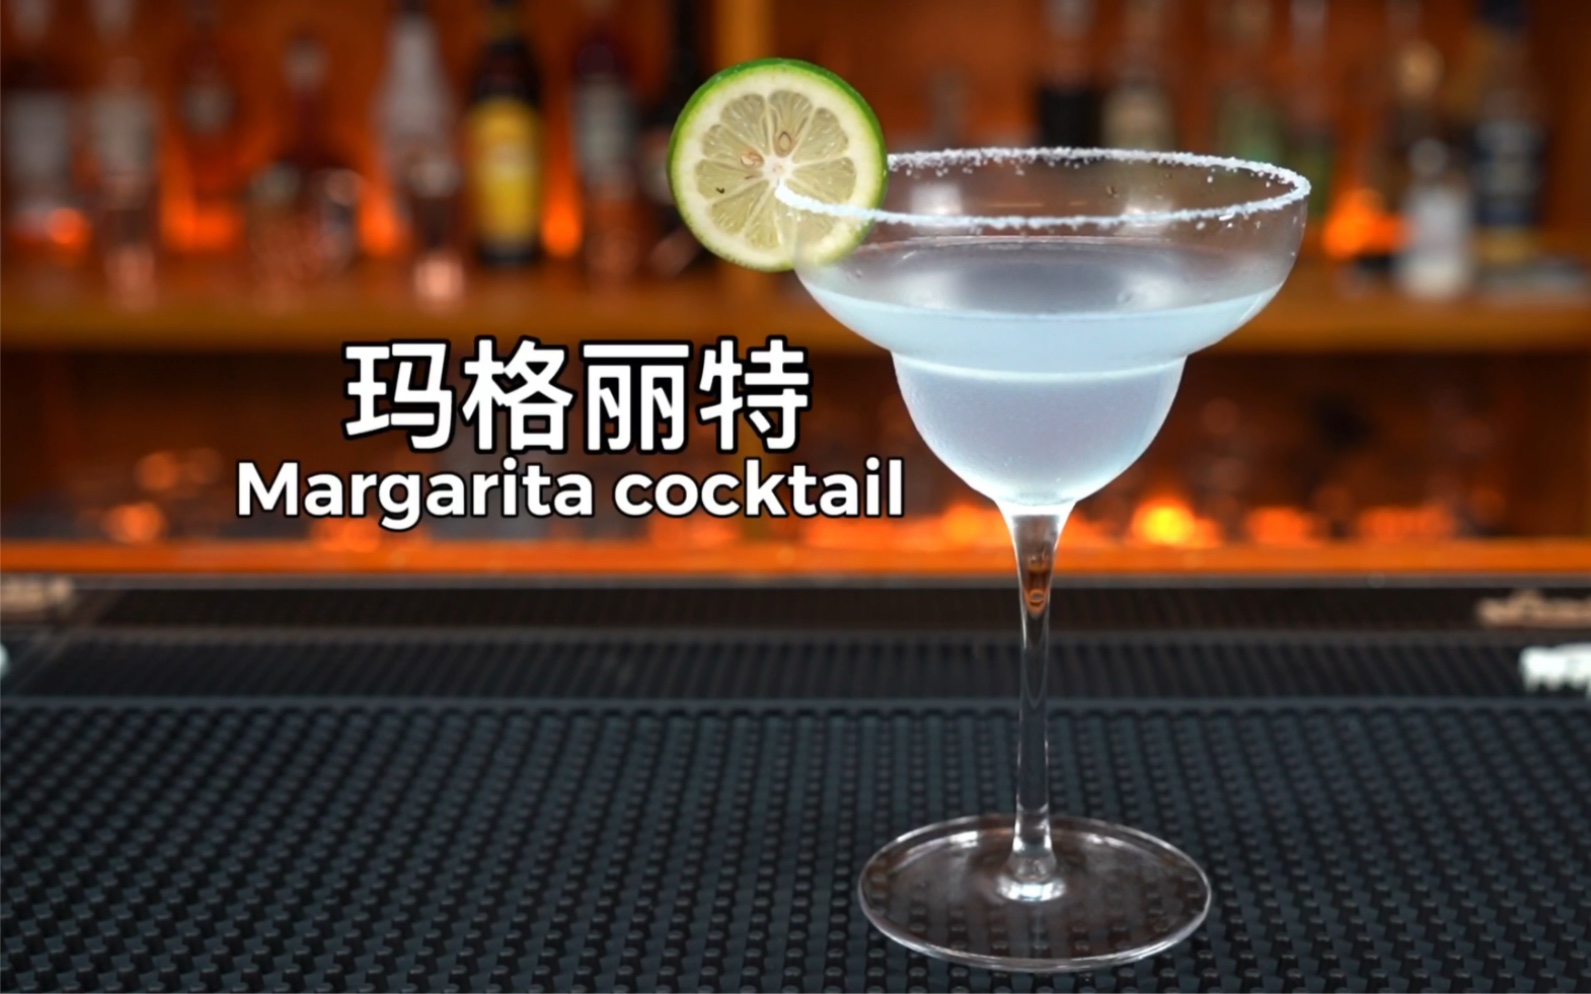 玛格丽特（Margarita）玛格丽特被称作“鸡尾酒之后”，它是除马天尼以外世界上知名度最高的传统鸡尾酒之一。